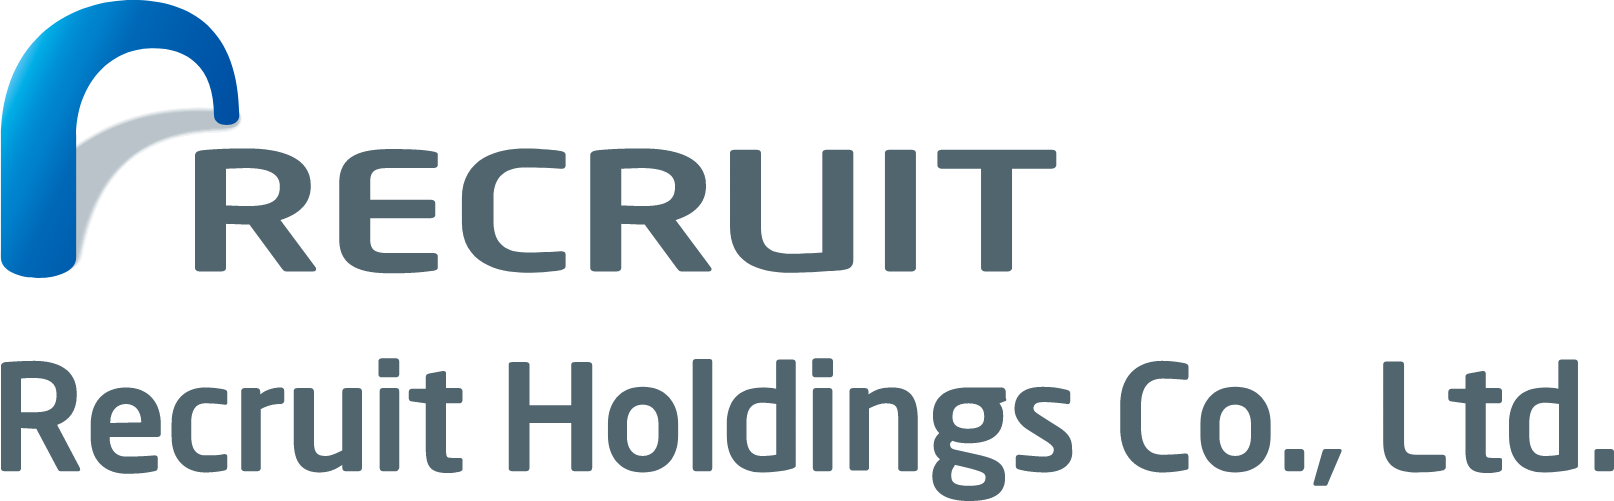 Recruit logo large (transparent PNG)